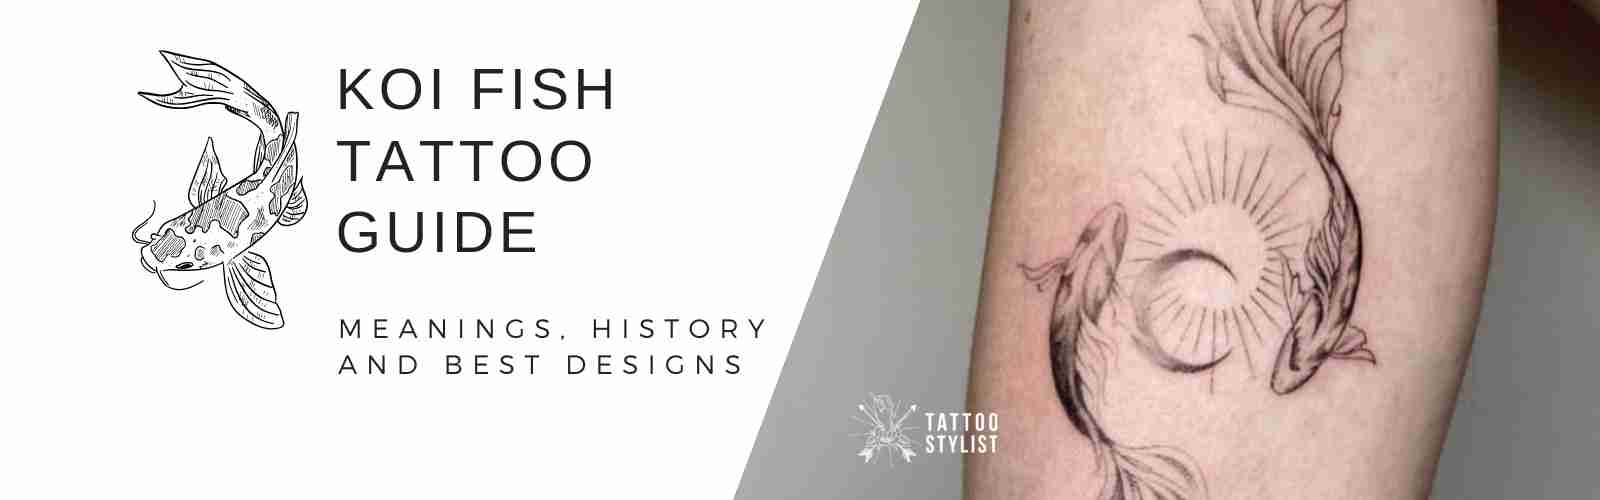 Abstract Tribal Fish Tattoo - Fish Tattoo - Posters and Art Prints |  TeePublic